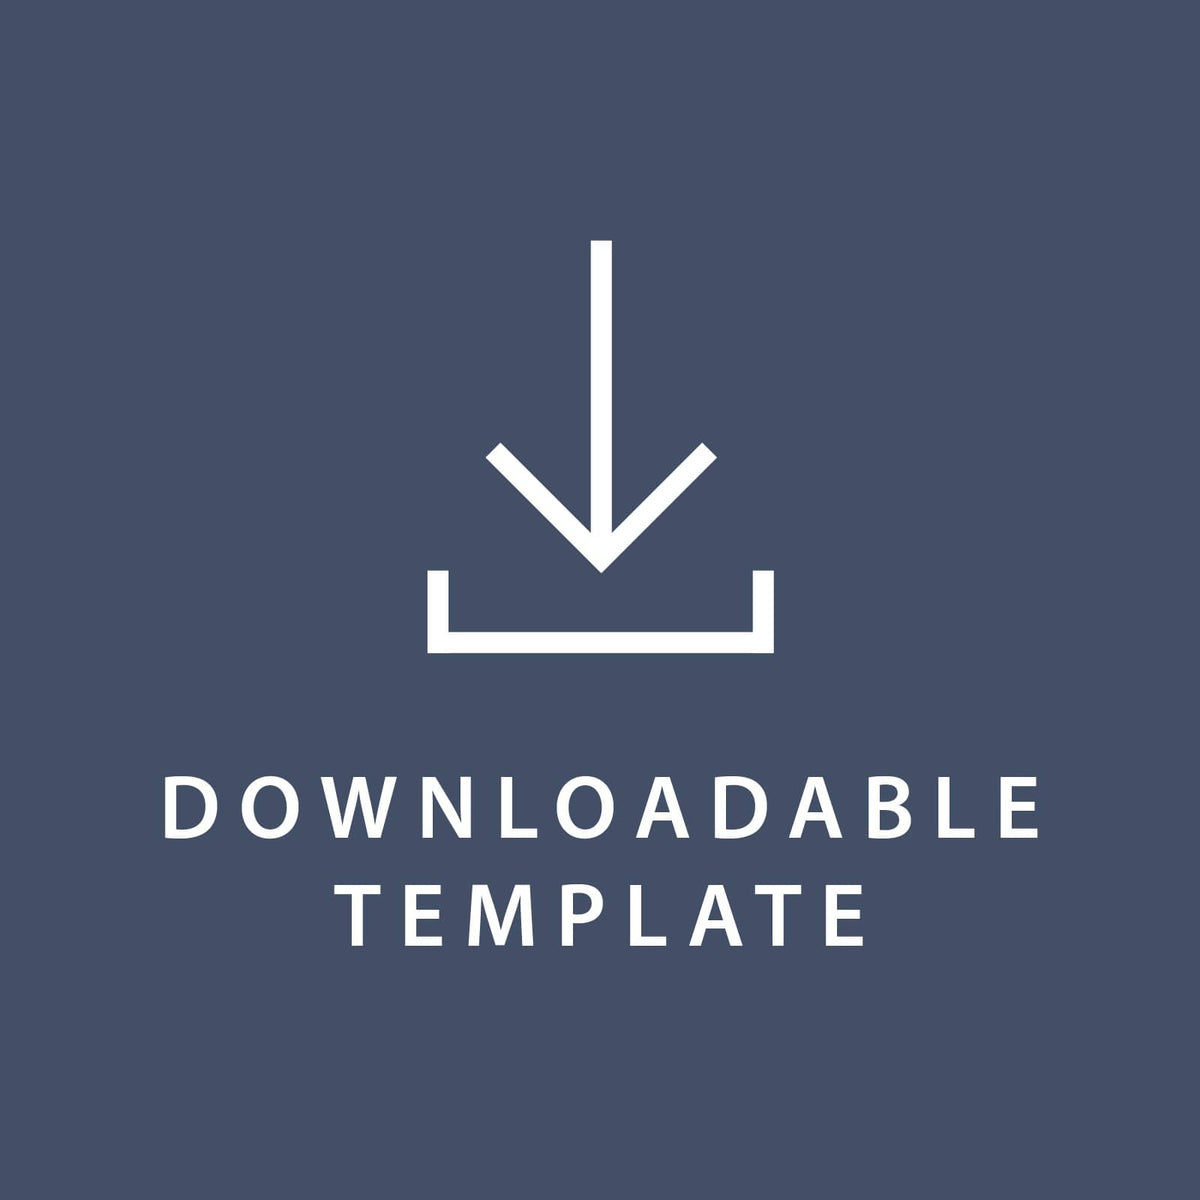 Template for 4.75 x 6.88 Invitations Gartner Studios Template tmplt0161